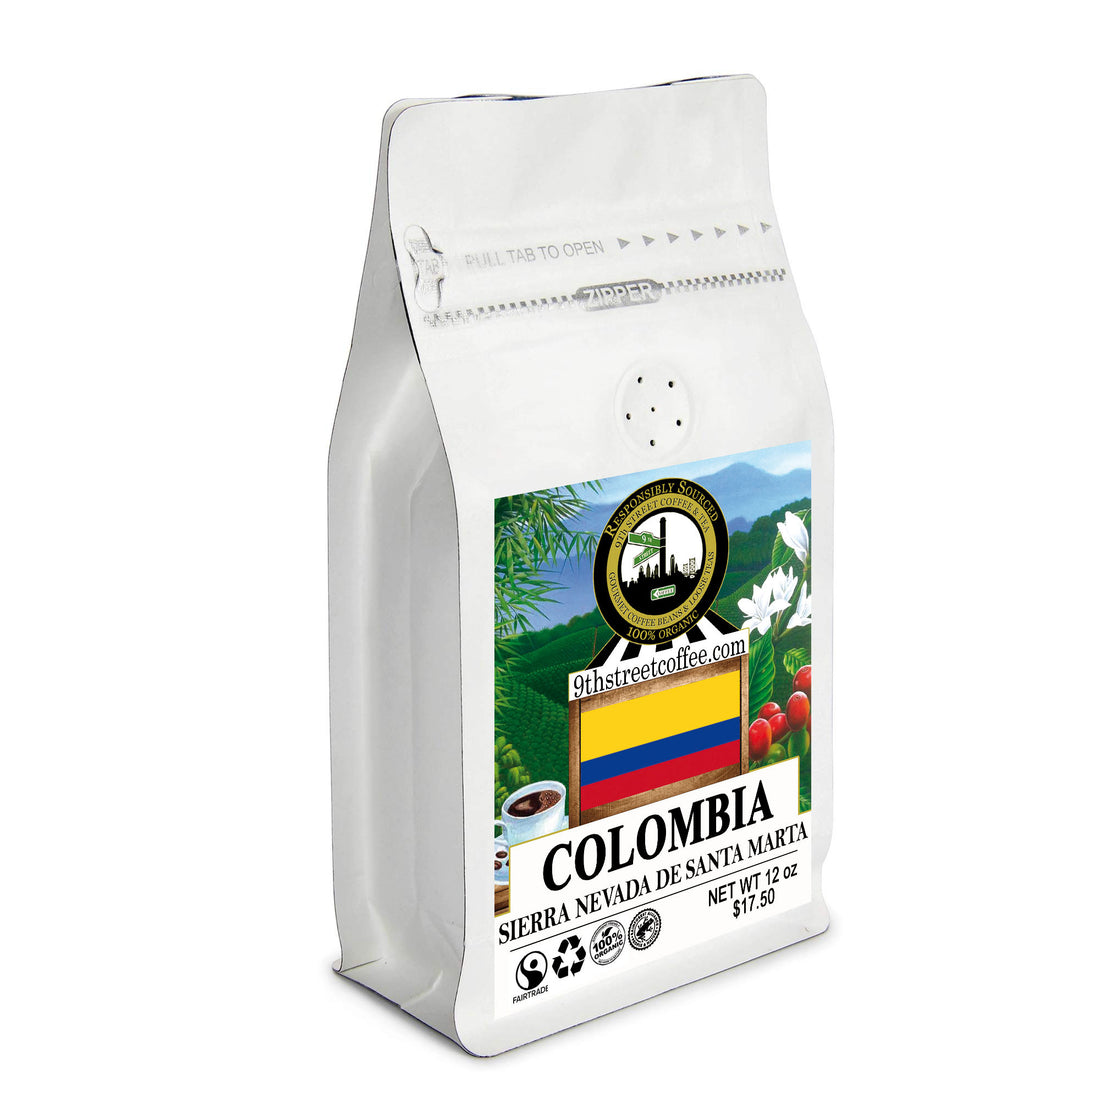 Organic Colombian Sierra Nevada de Santa Marta Coffee